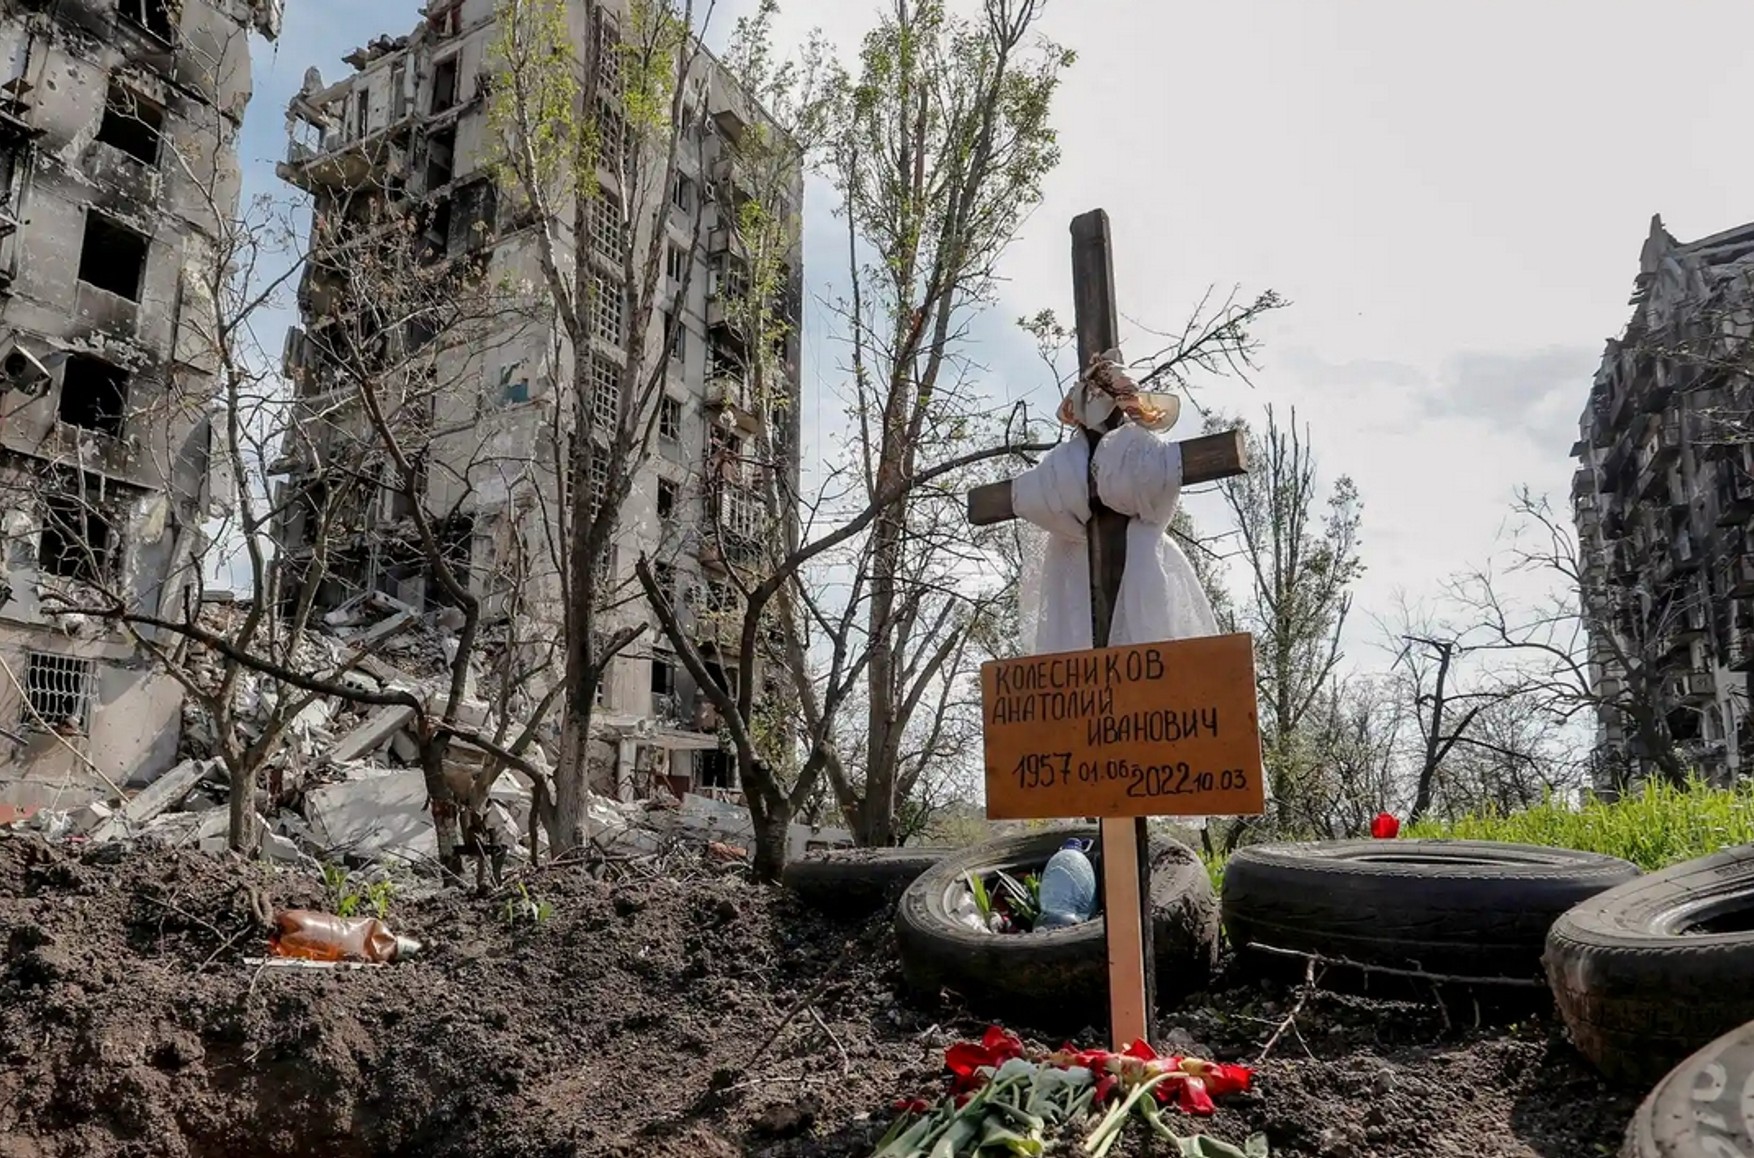 The Guardian: десятки тысяч украинцев ищут пропавших в Мариуполе родственников, чтобы их похоронить